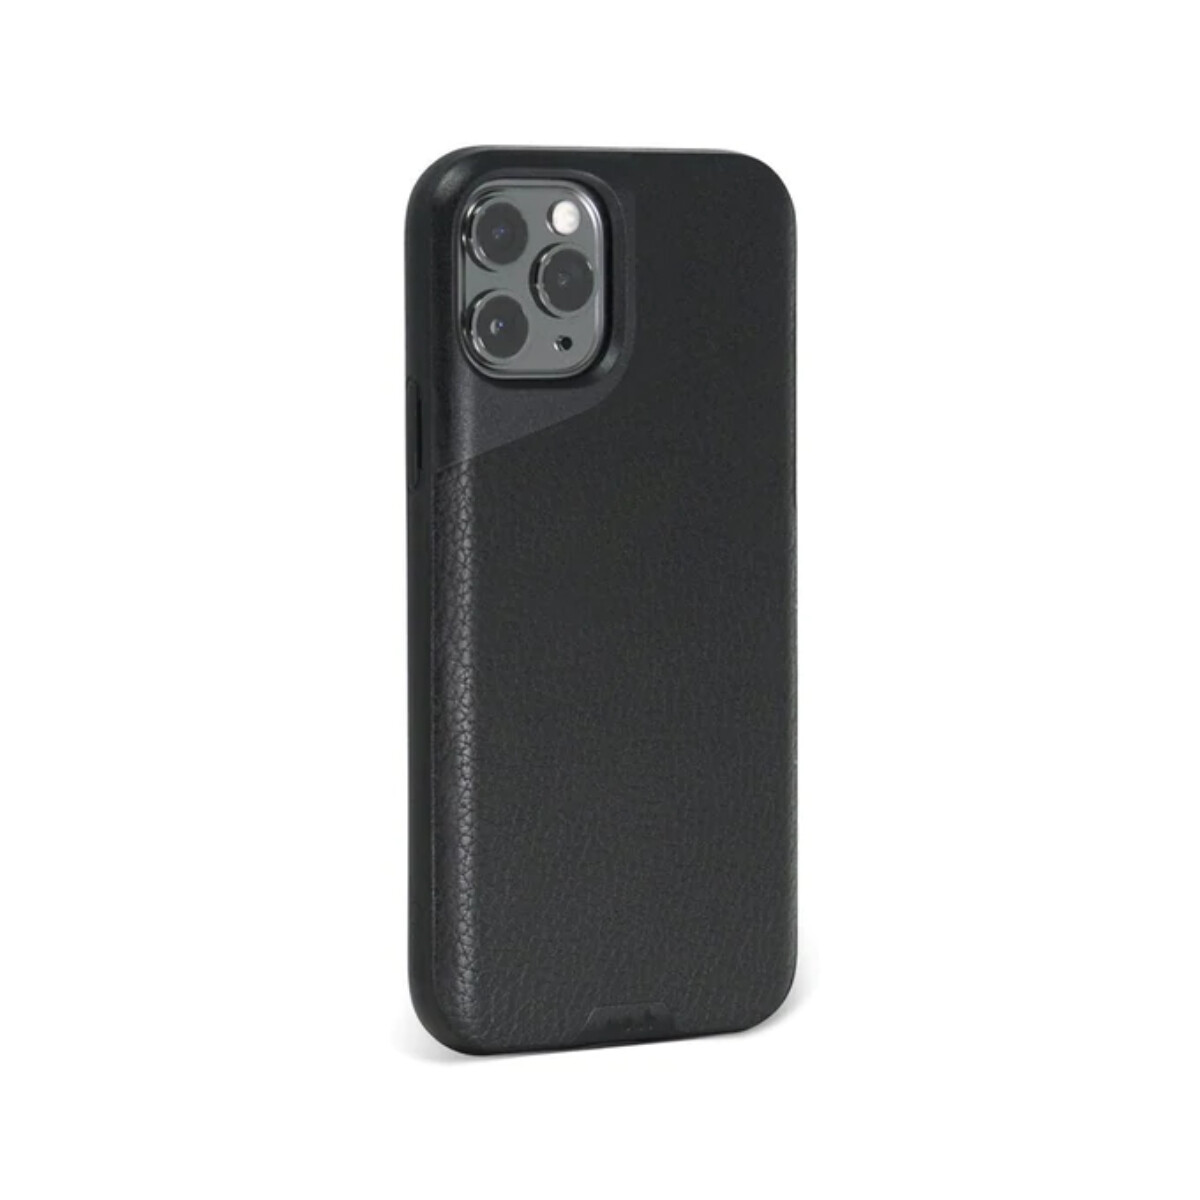 Mous case contour iphone 11 pro max - Black 